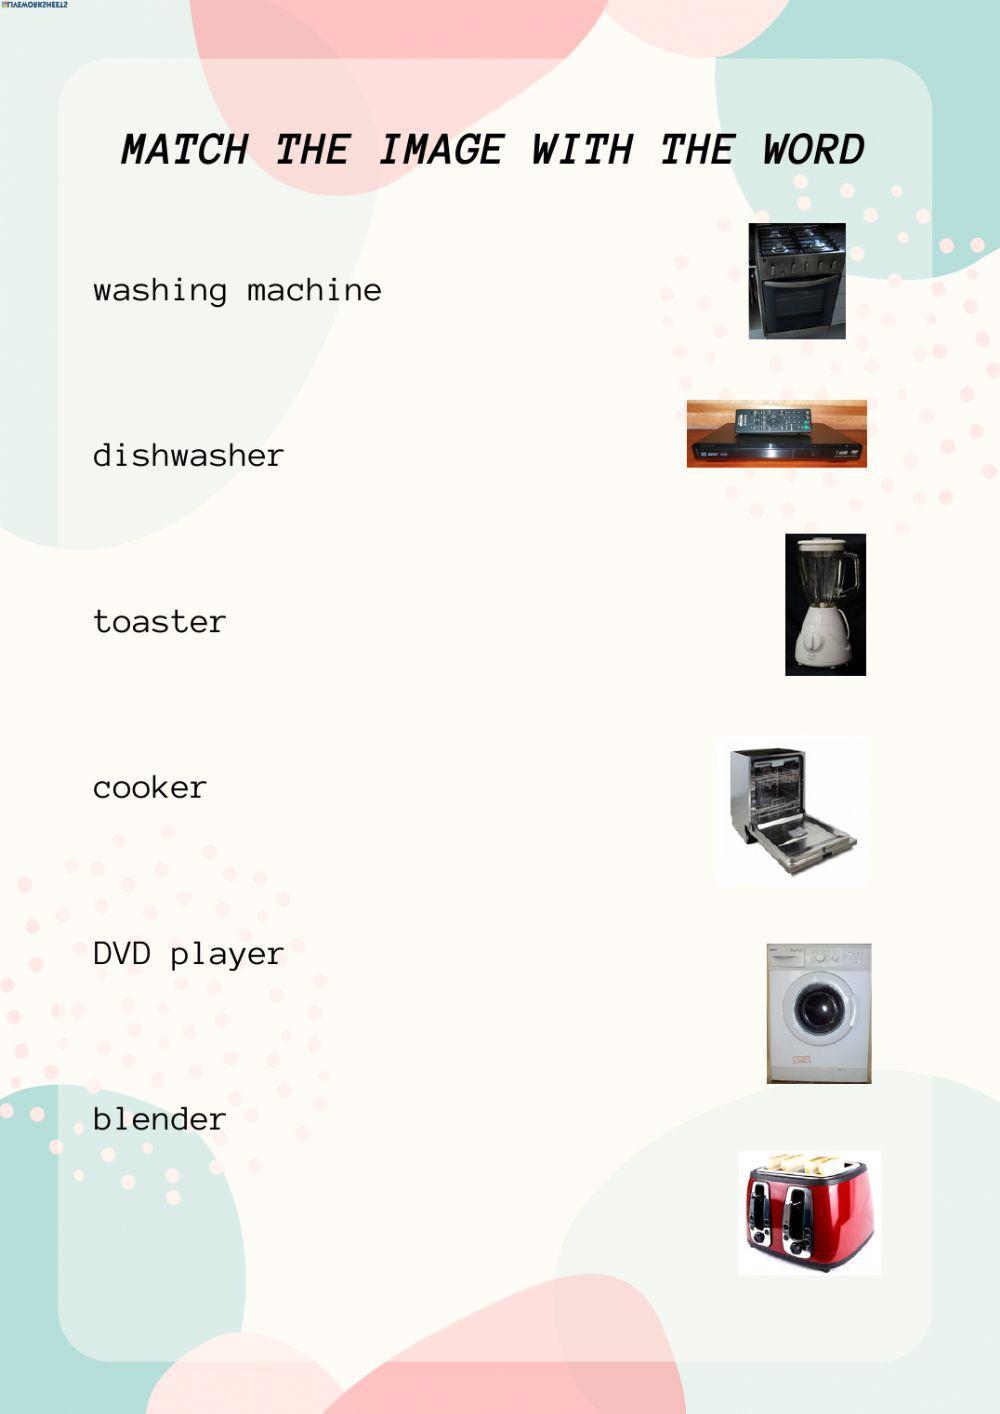 Kitchen Machines